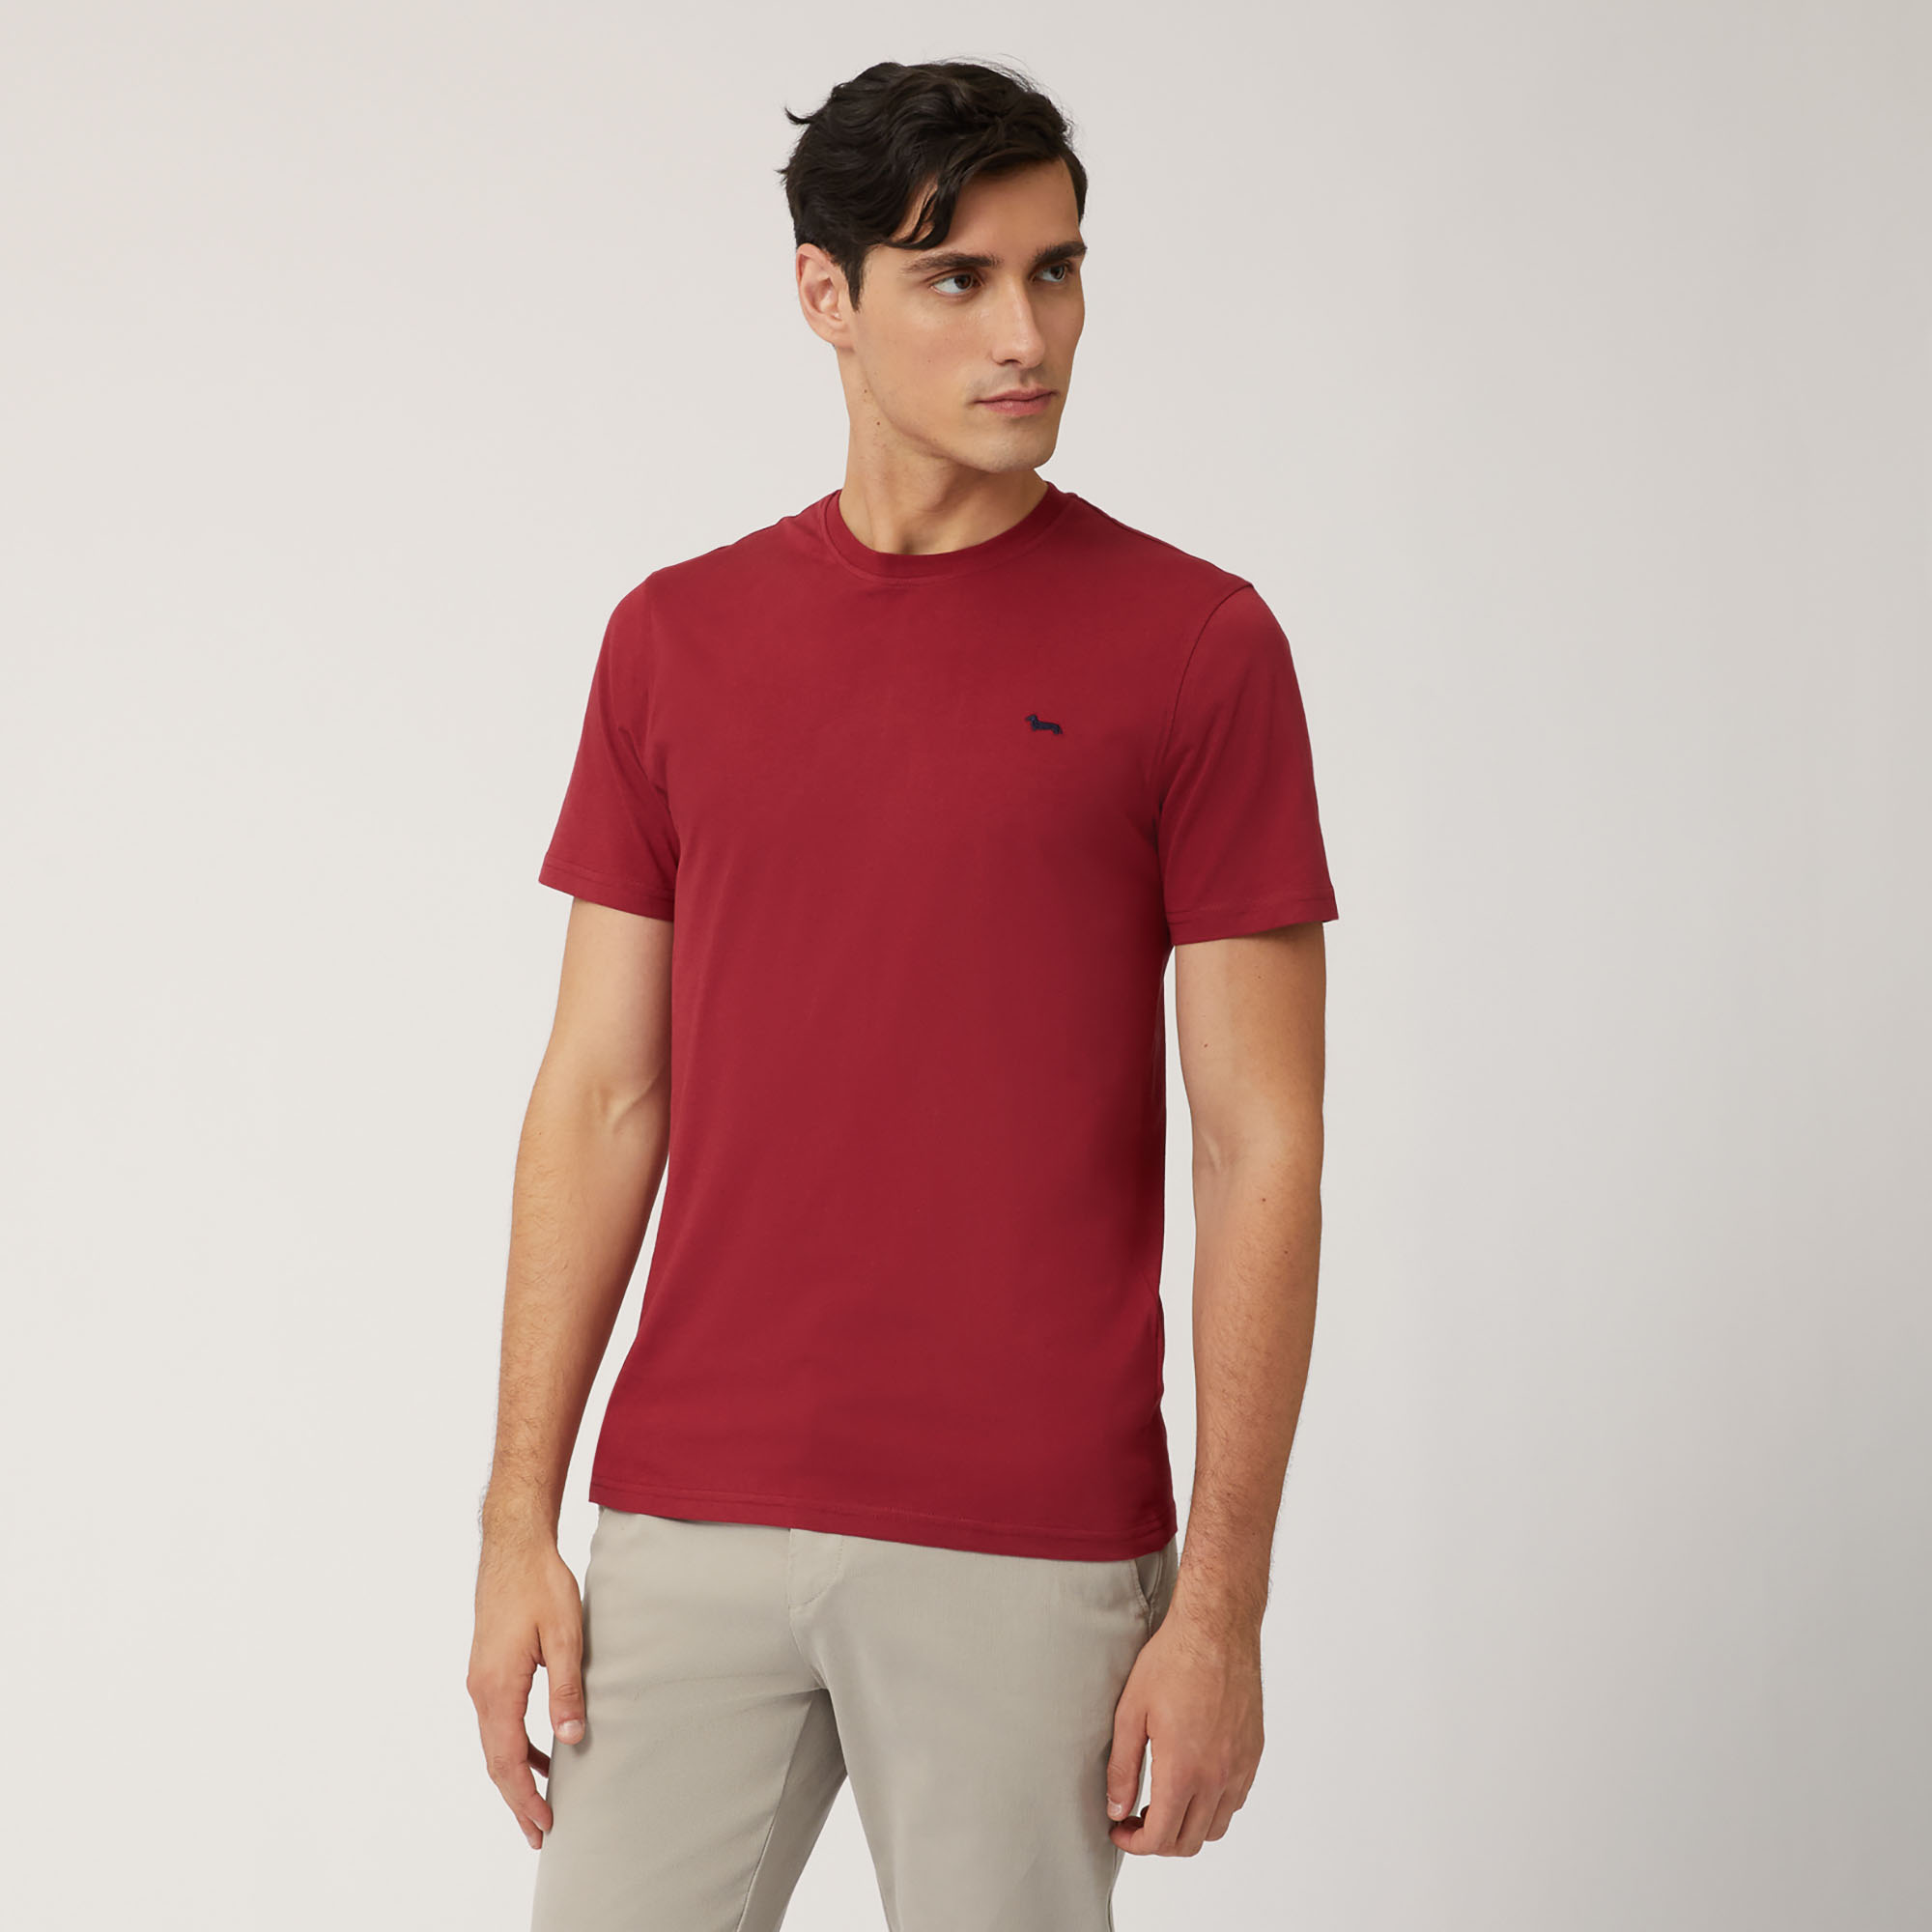 Cotton Jersey T-Shirt, Purple, large